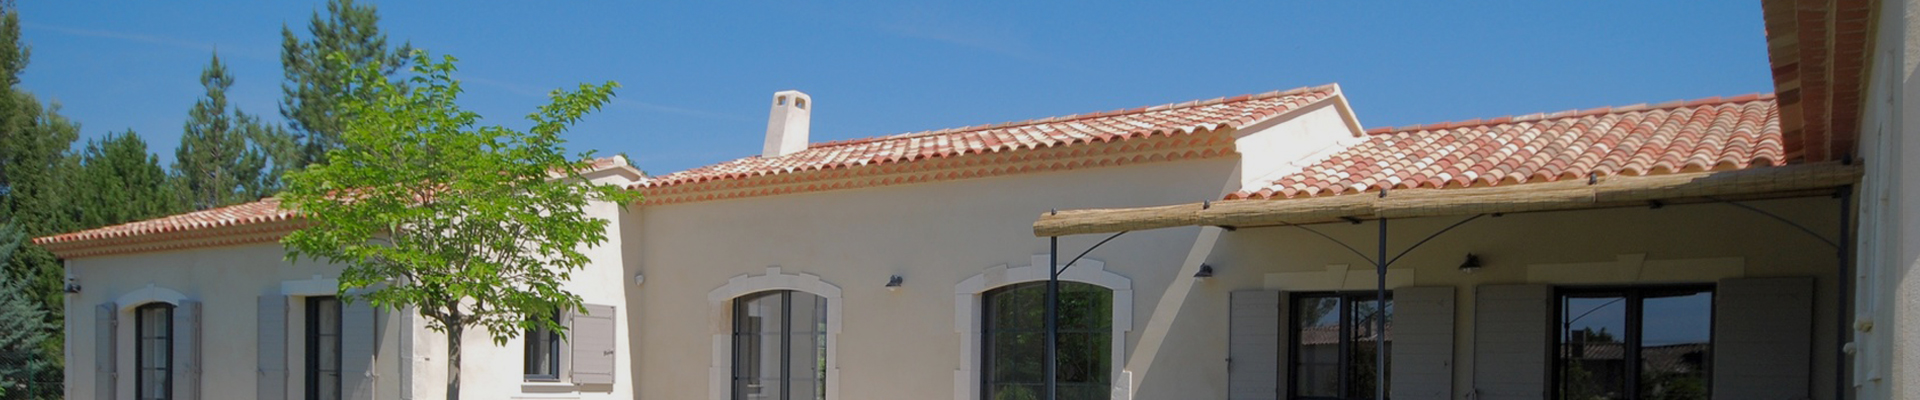 Prix et avis service de rénovation de toitures au Cannet et Valbonne dans les Alpes-Maritimes 06